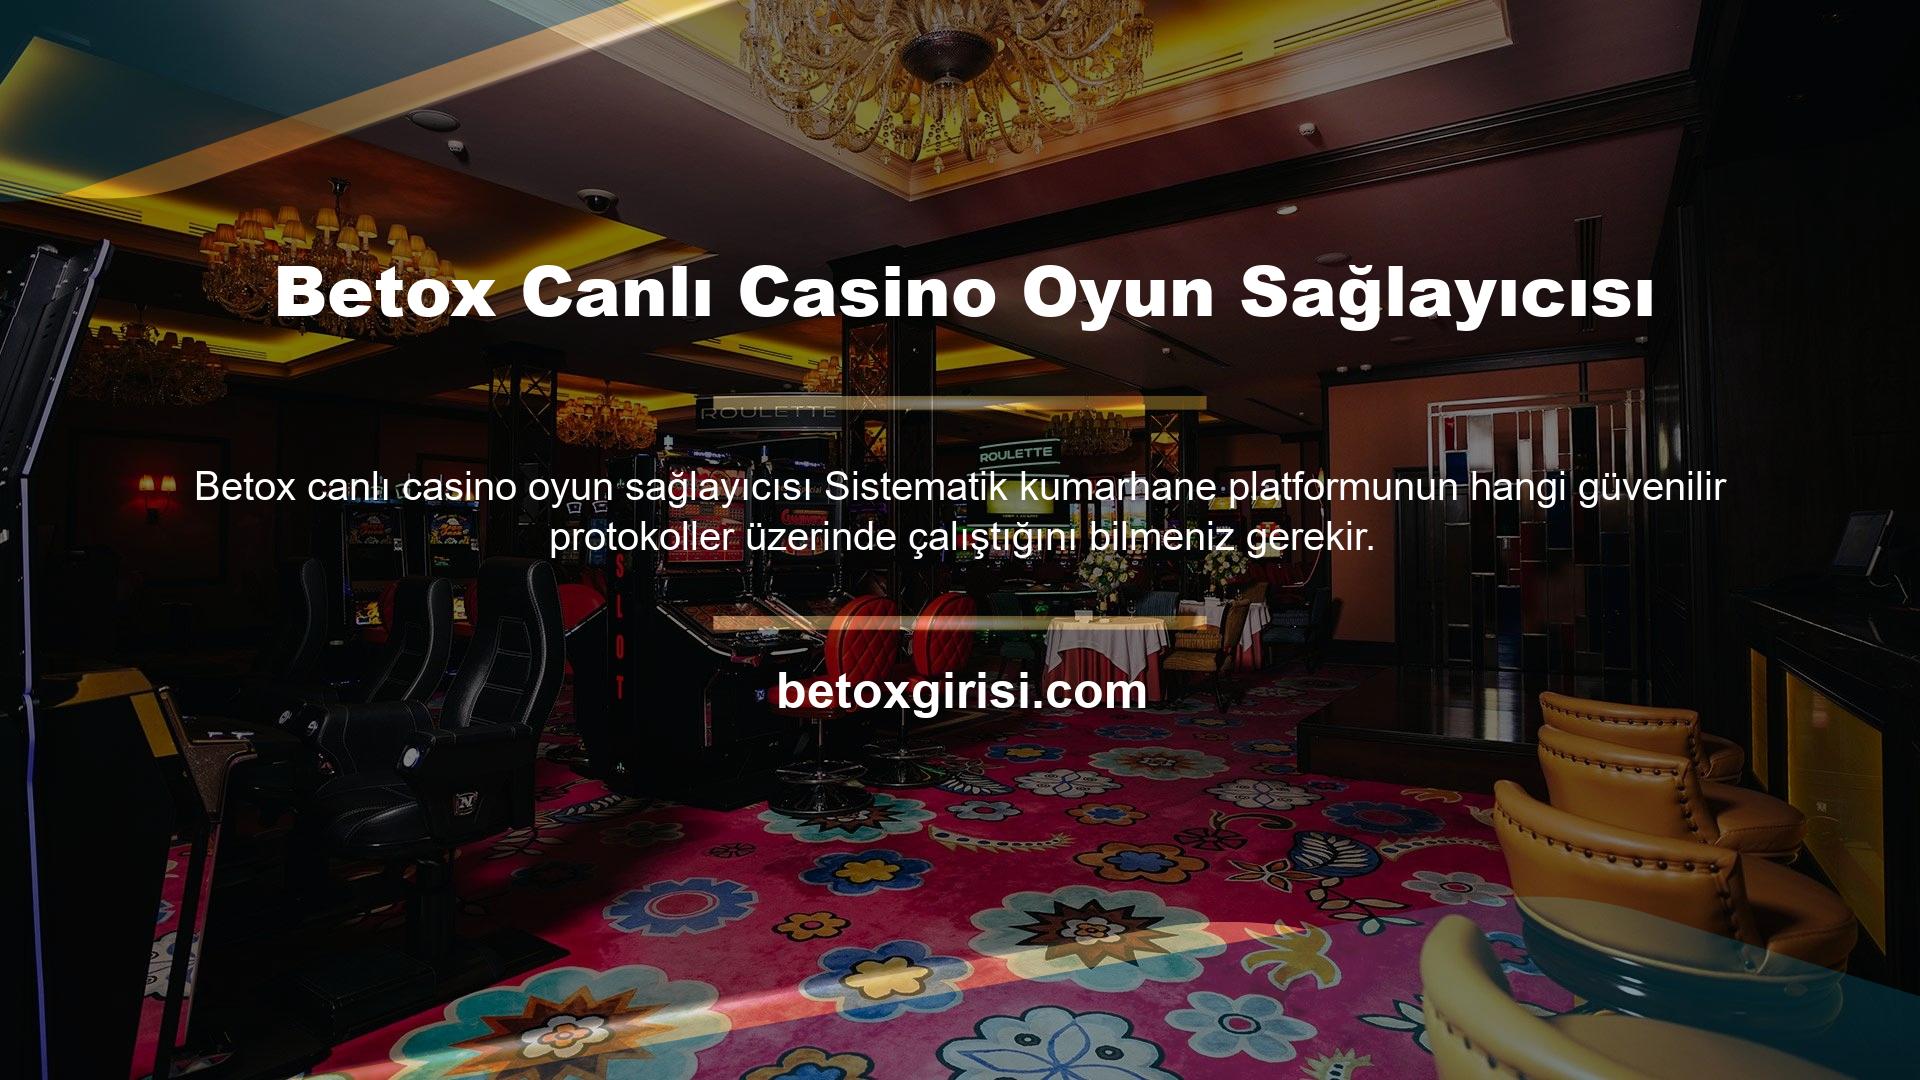 Artık web sitenizin canlı casino bölümünde bulacağınız premium oyun sağlayıcılarına da göz atabilirsiniz